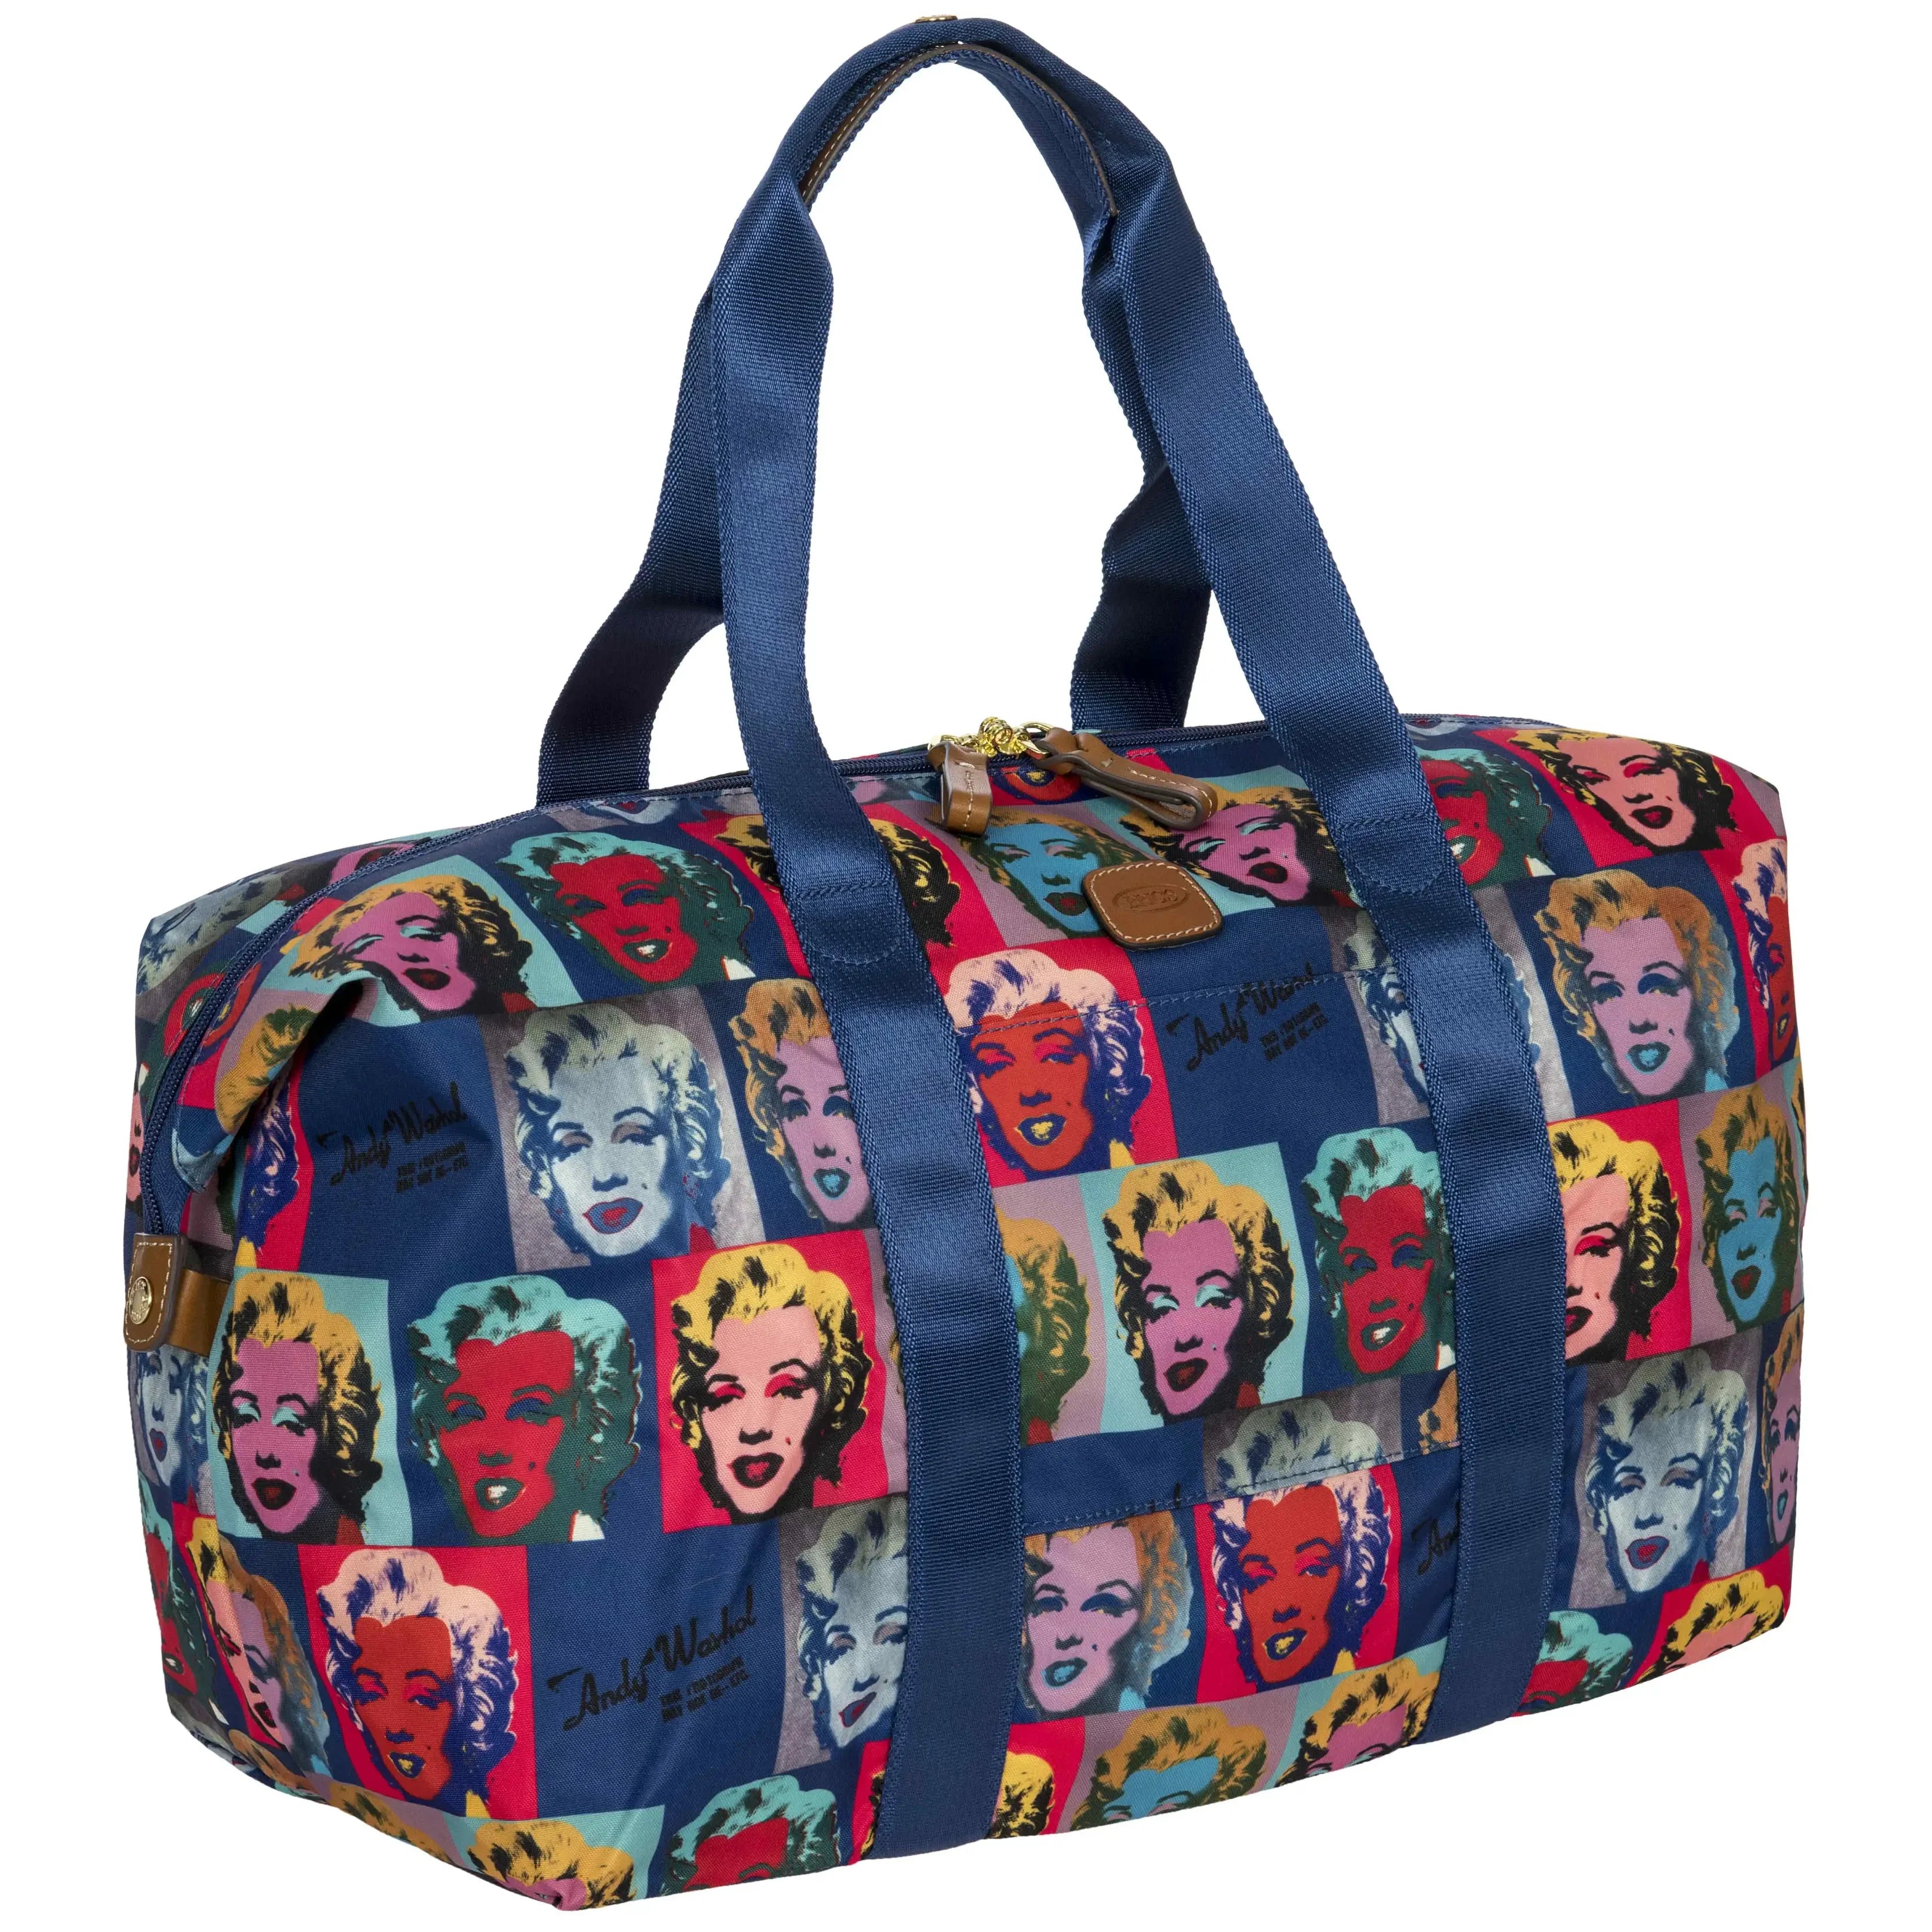 Brics Andy Warhol travel bag 43 cm - Marilyn